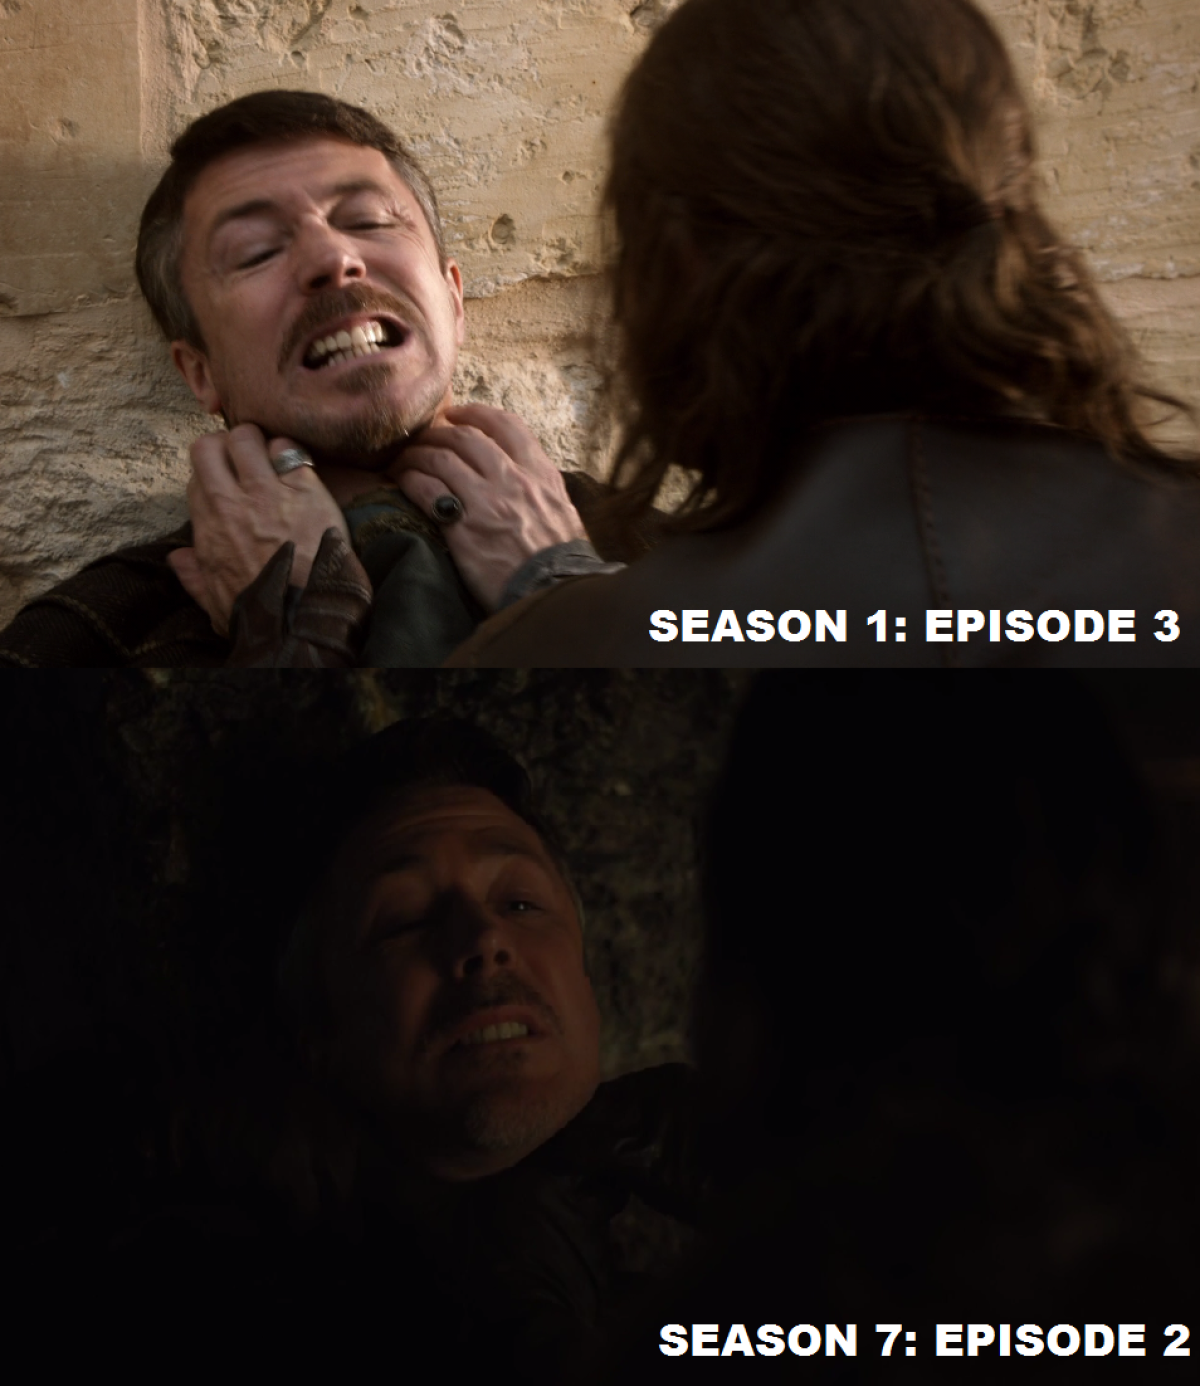 Game of Thrones - Littlefinger choked